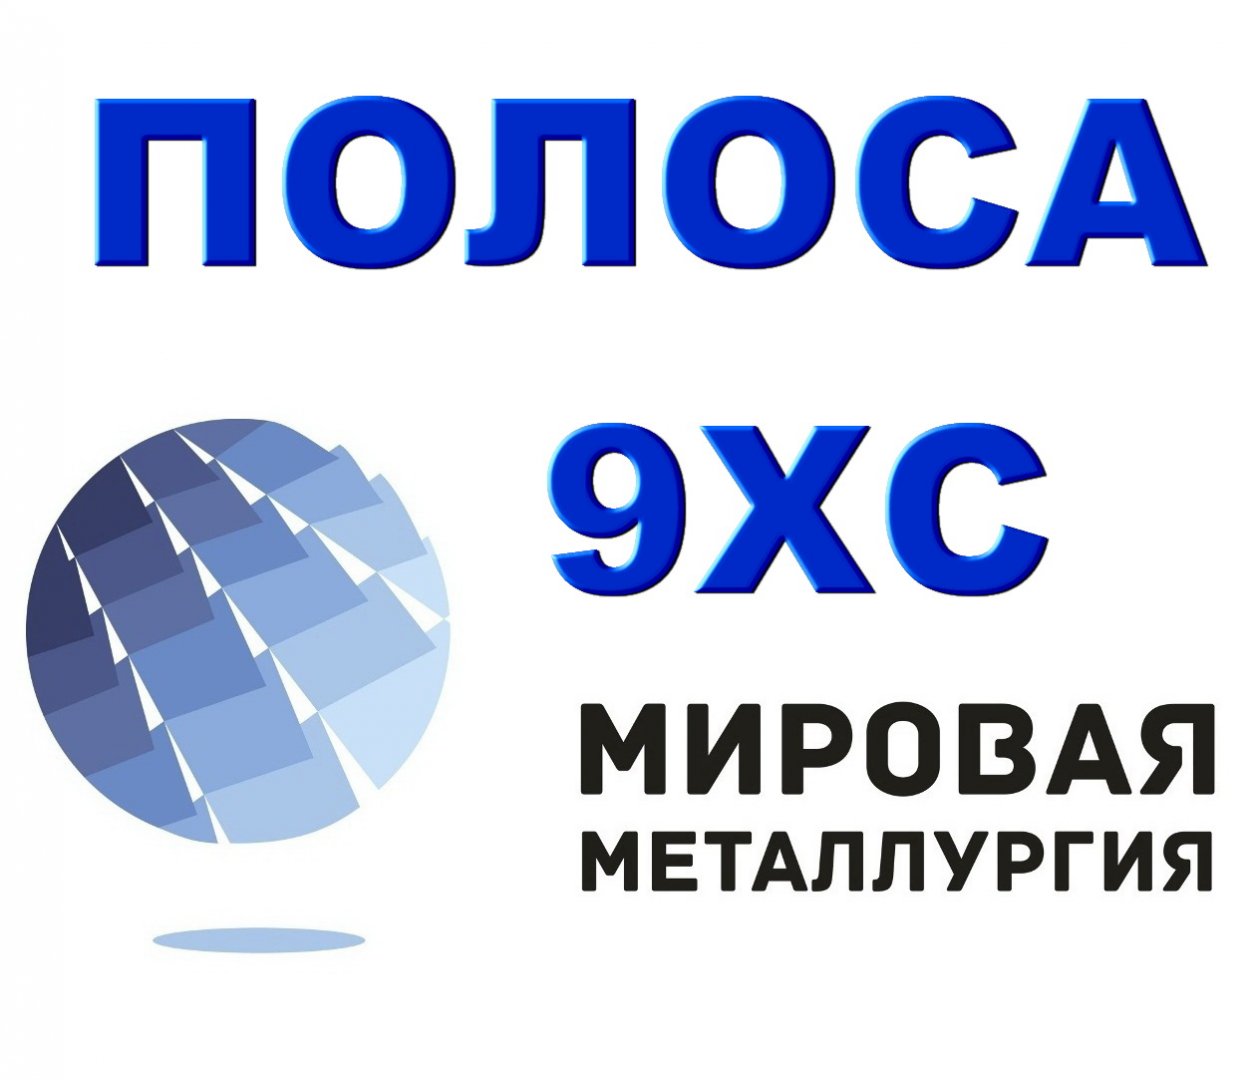 Продам металлопрокат в Краснодаре, Фирма ооо Мировая Металлургия занимается продажей